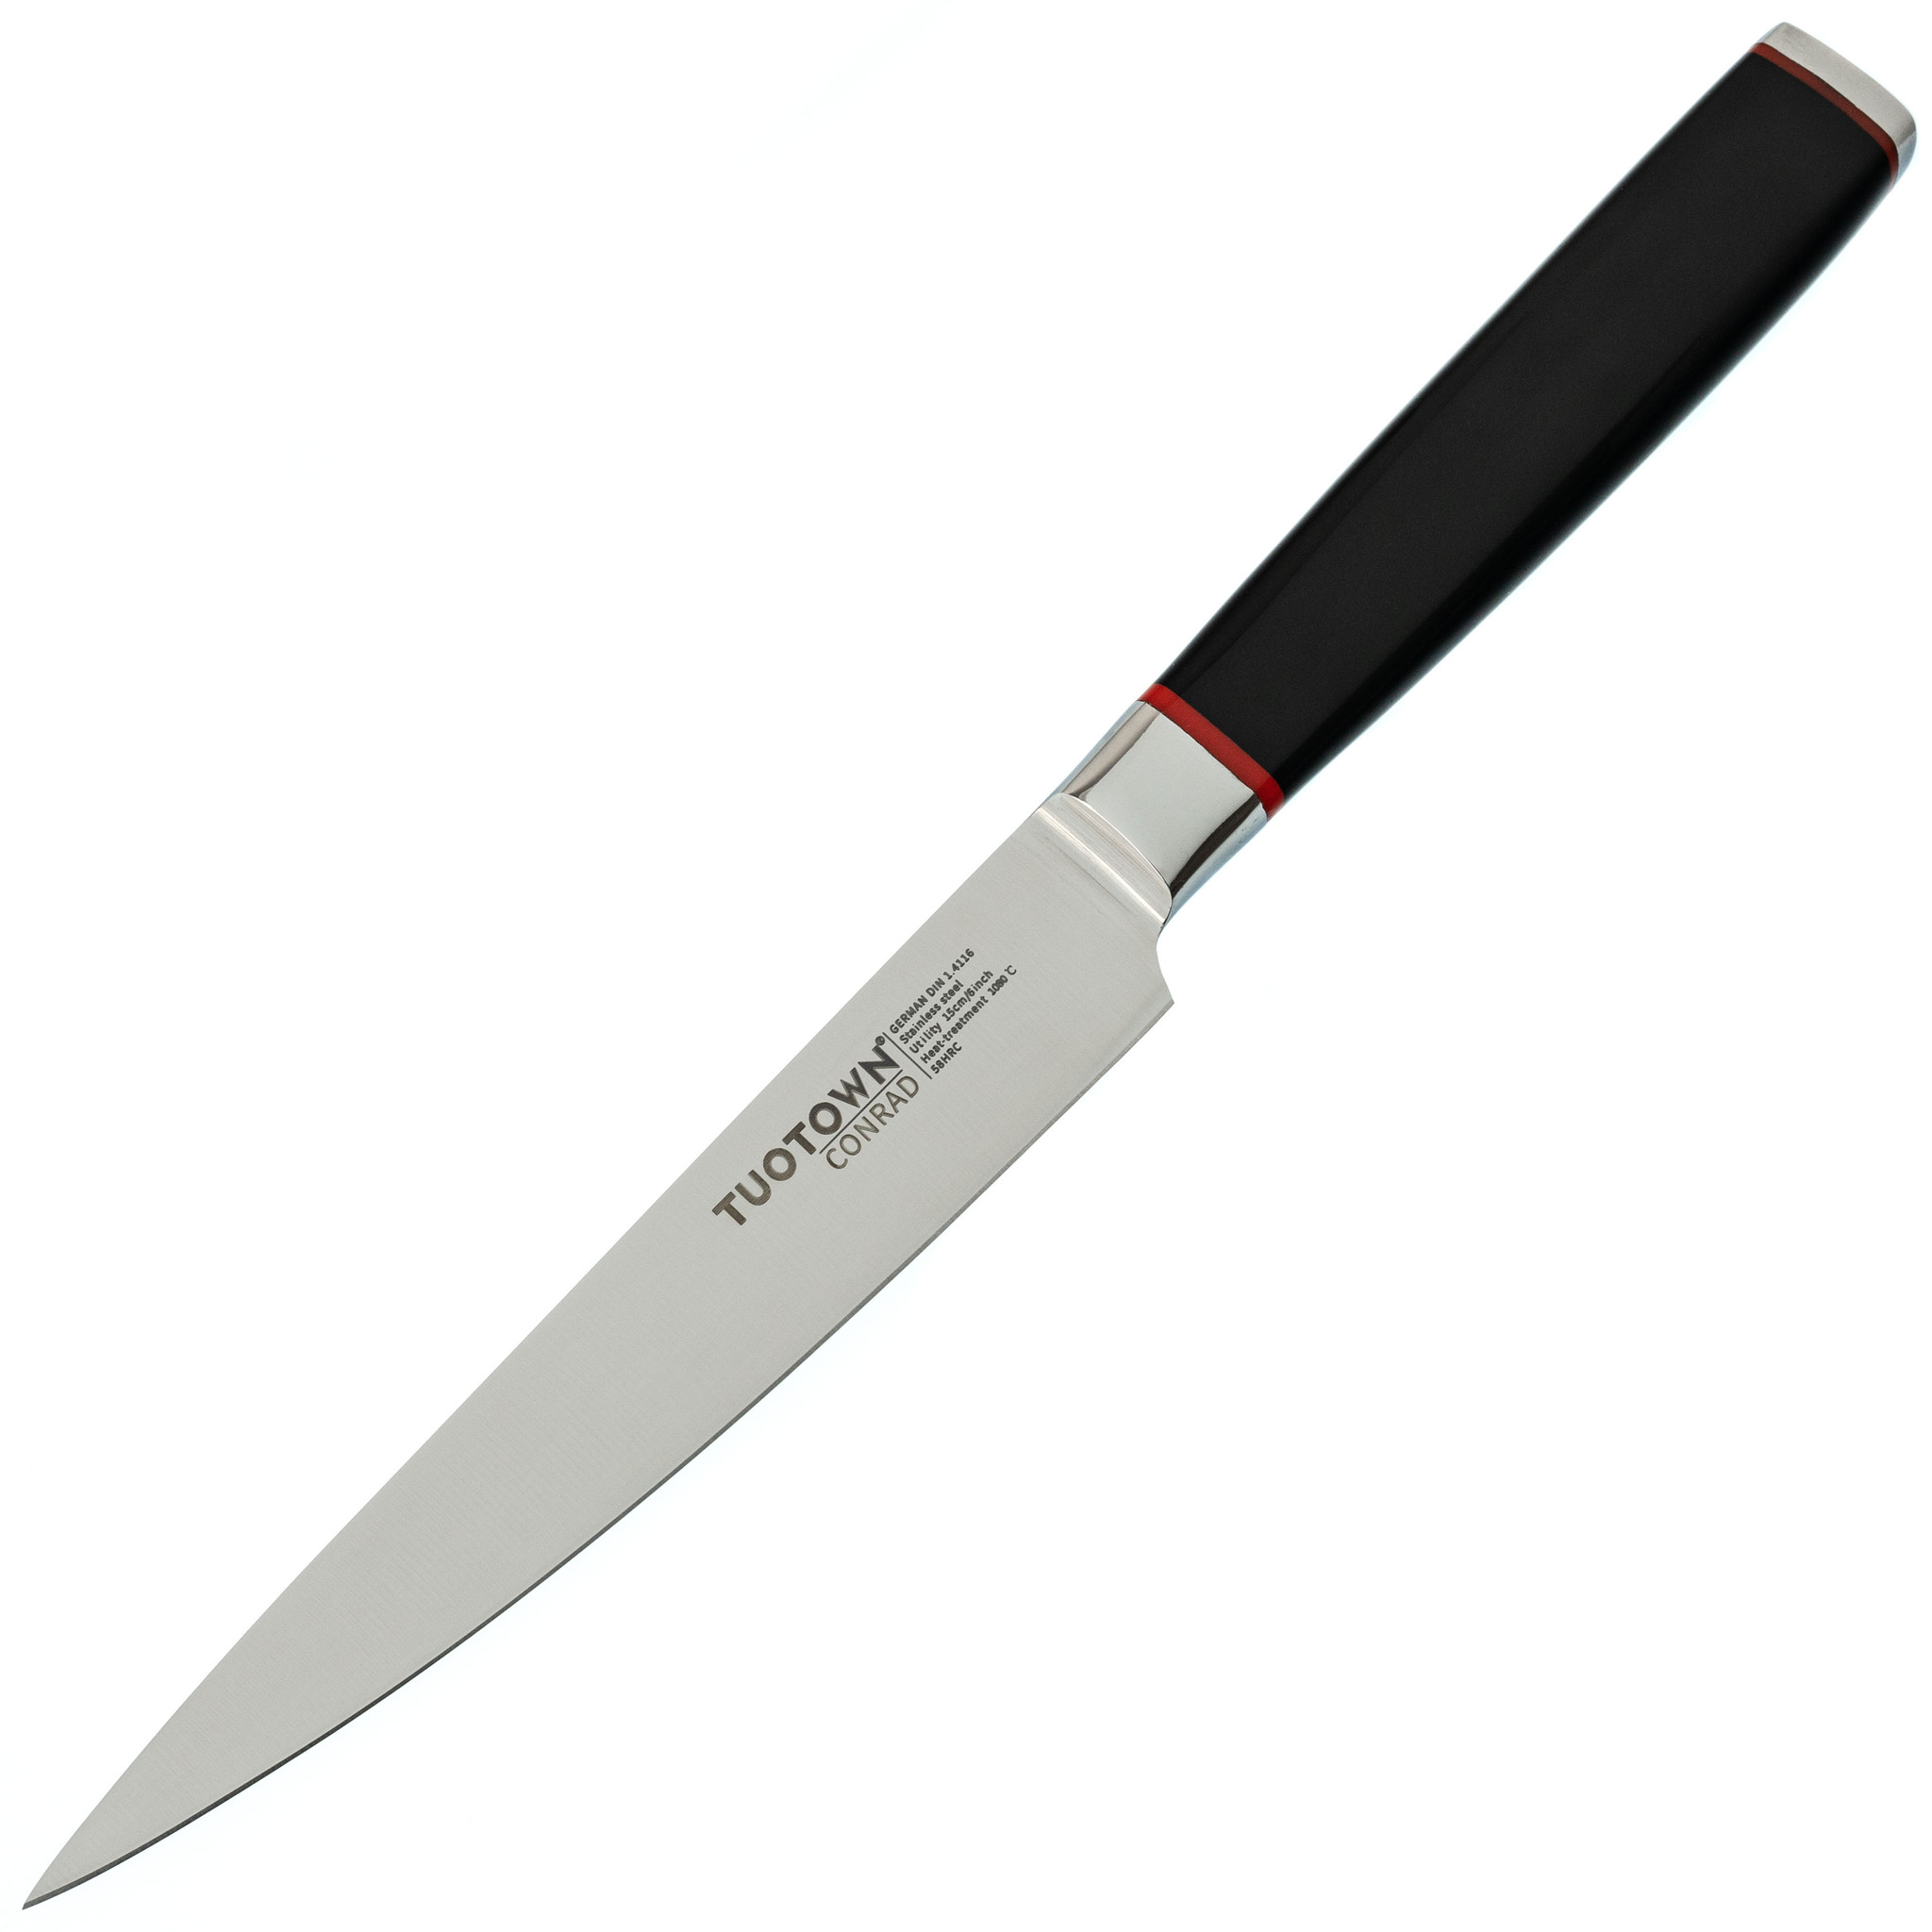 Кухонный универсальный нож Tuotown, серия CONRAD, сталь 1.4116